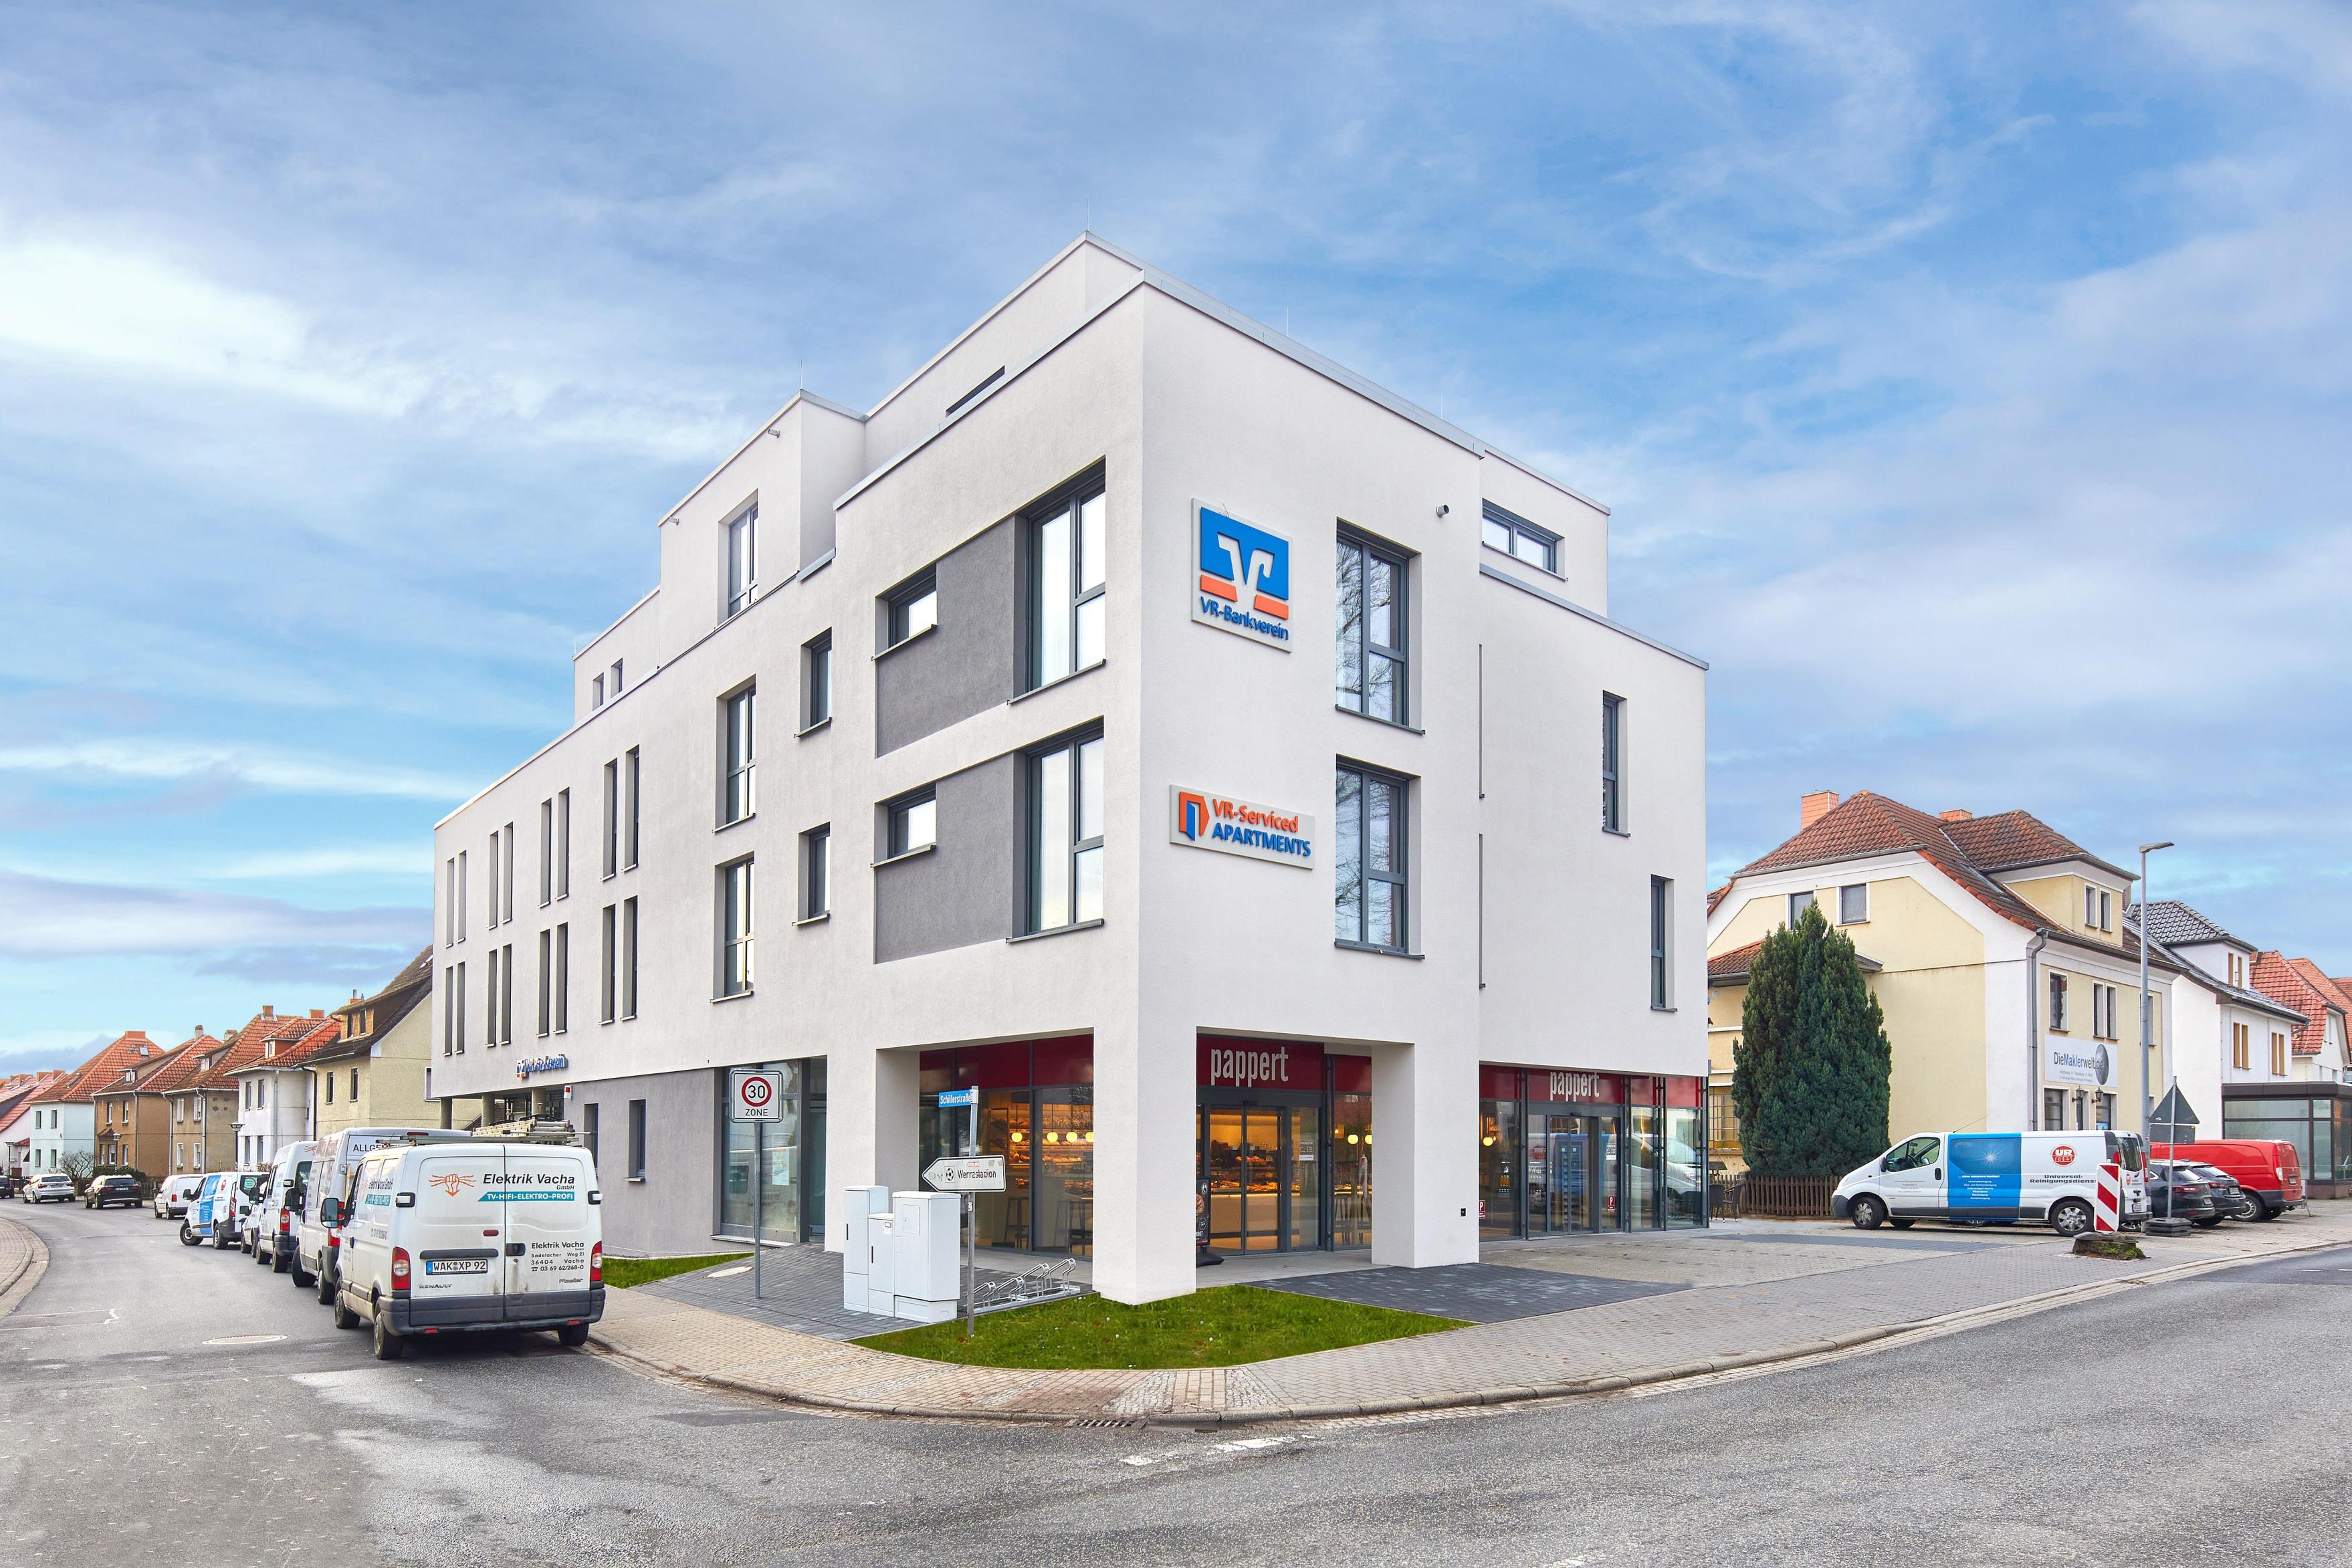 VR-Serviced Apartments in Gerstungen!